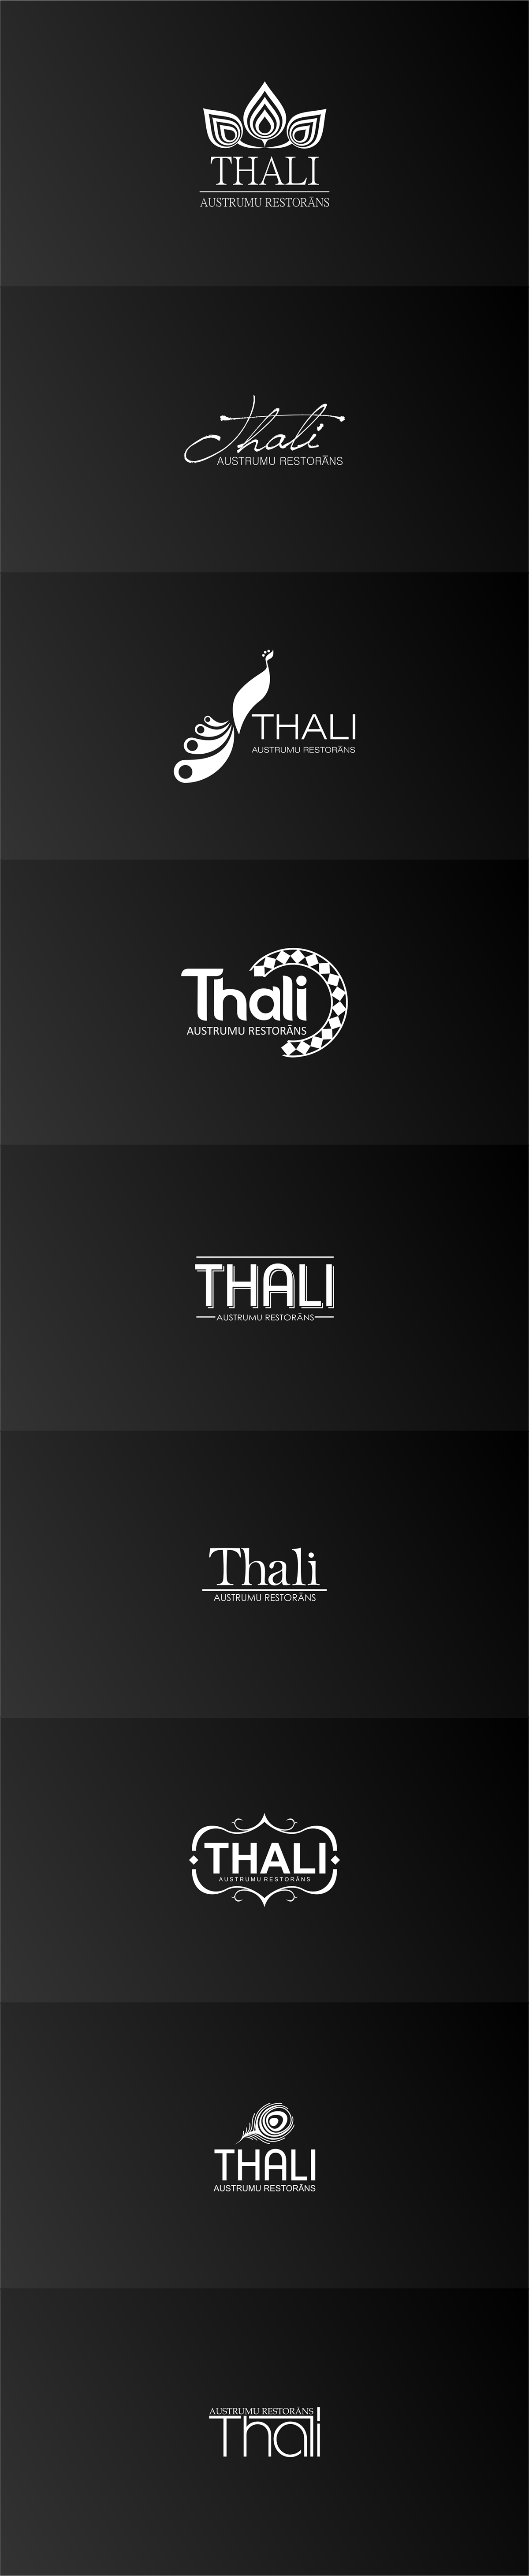 logo re-branding restaurant thali step